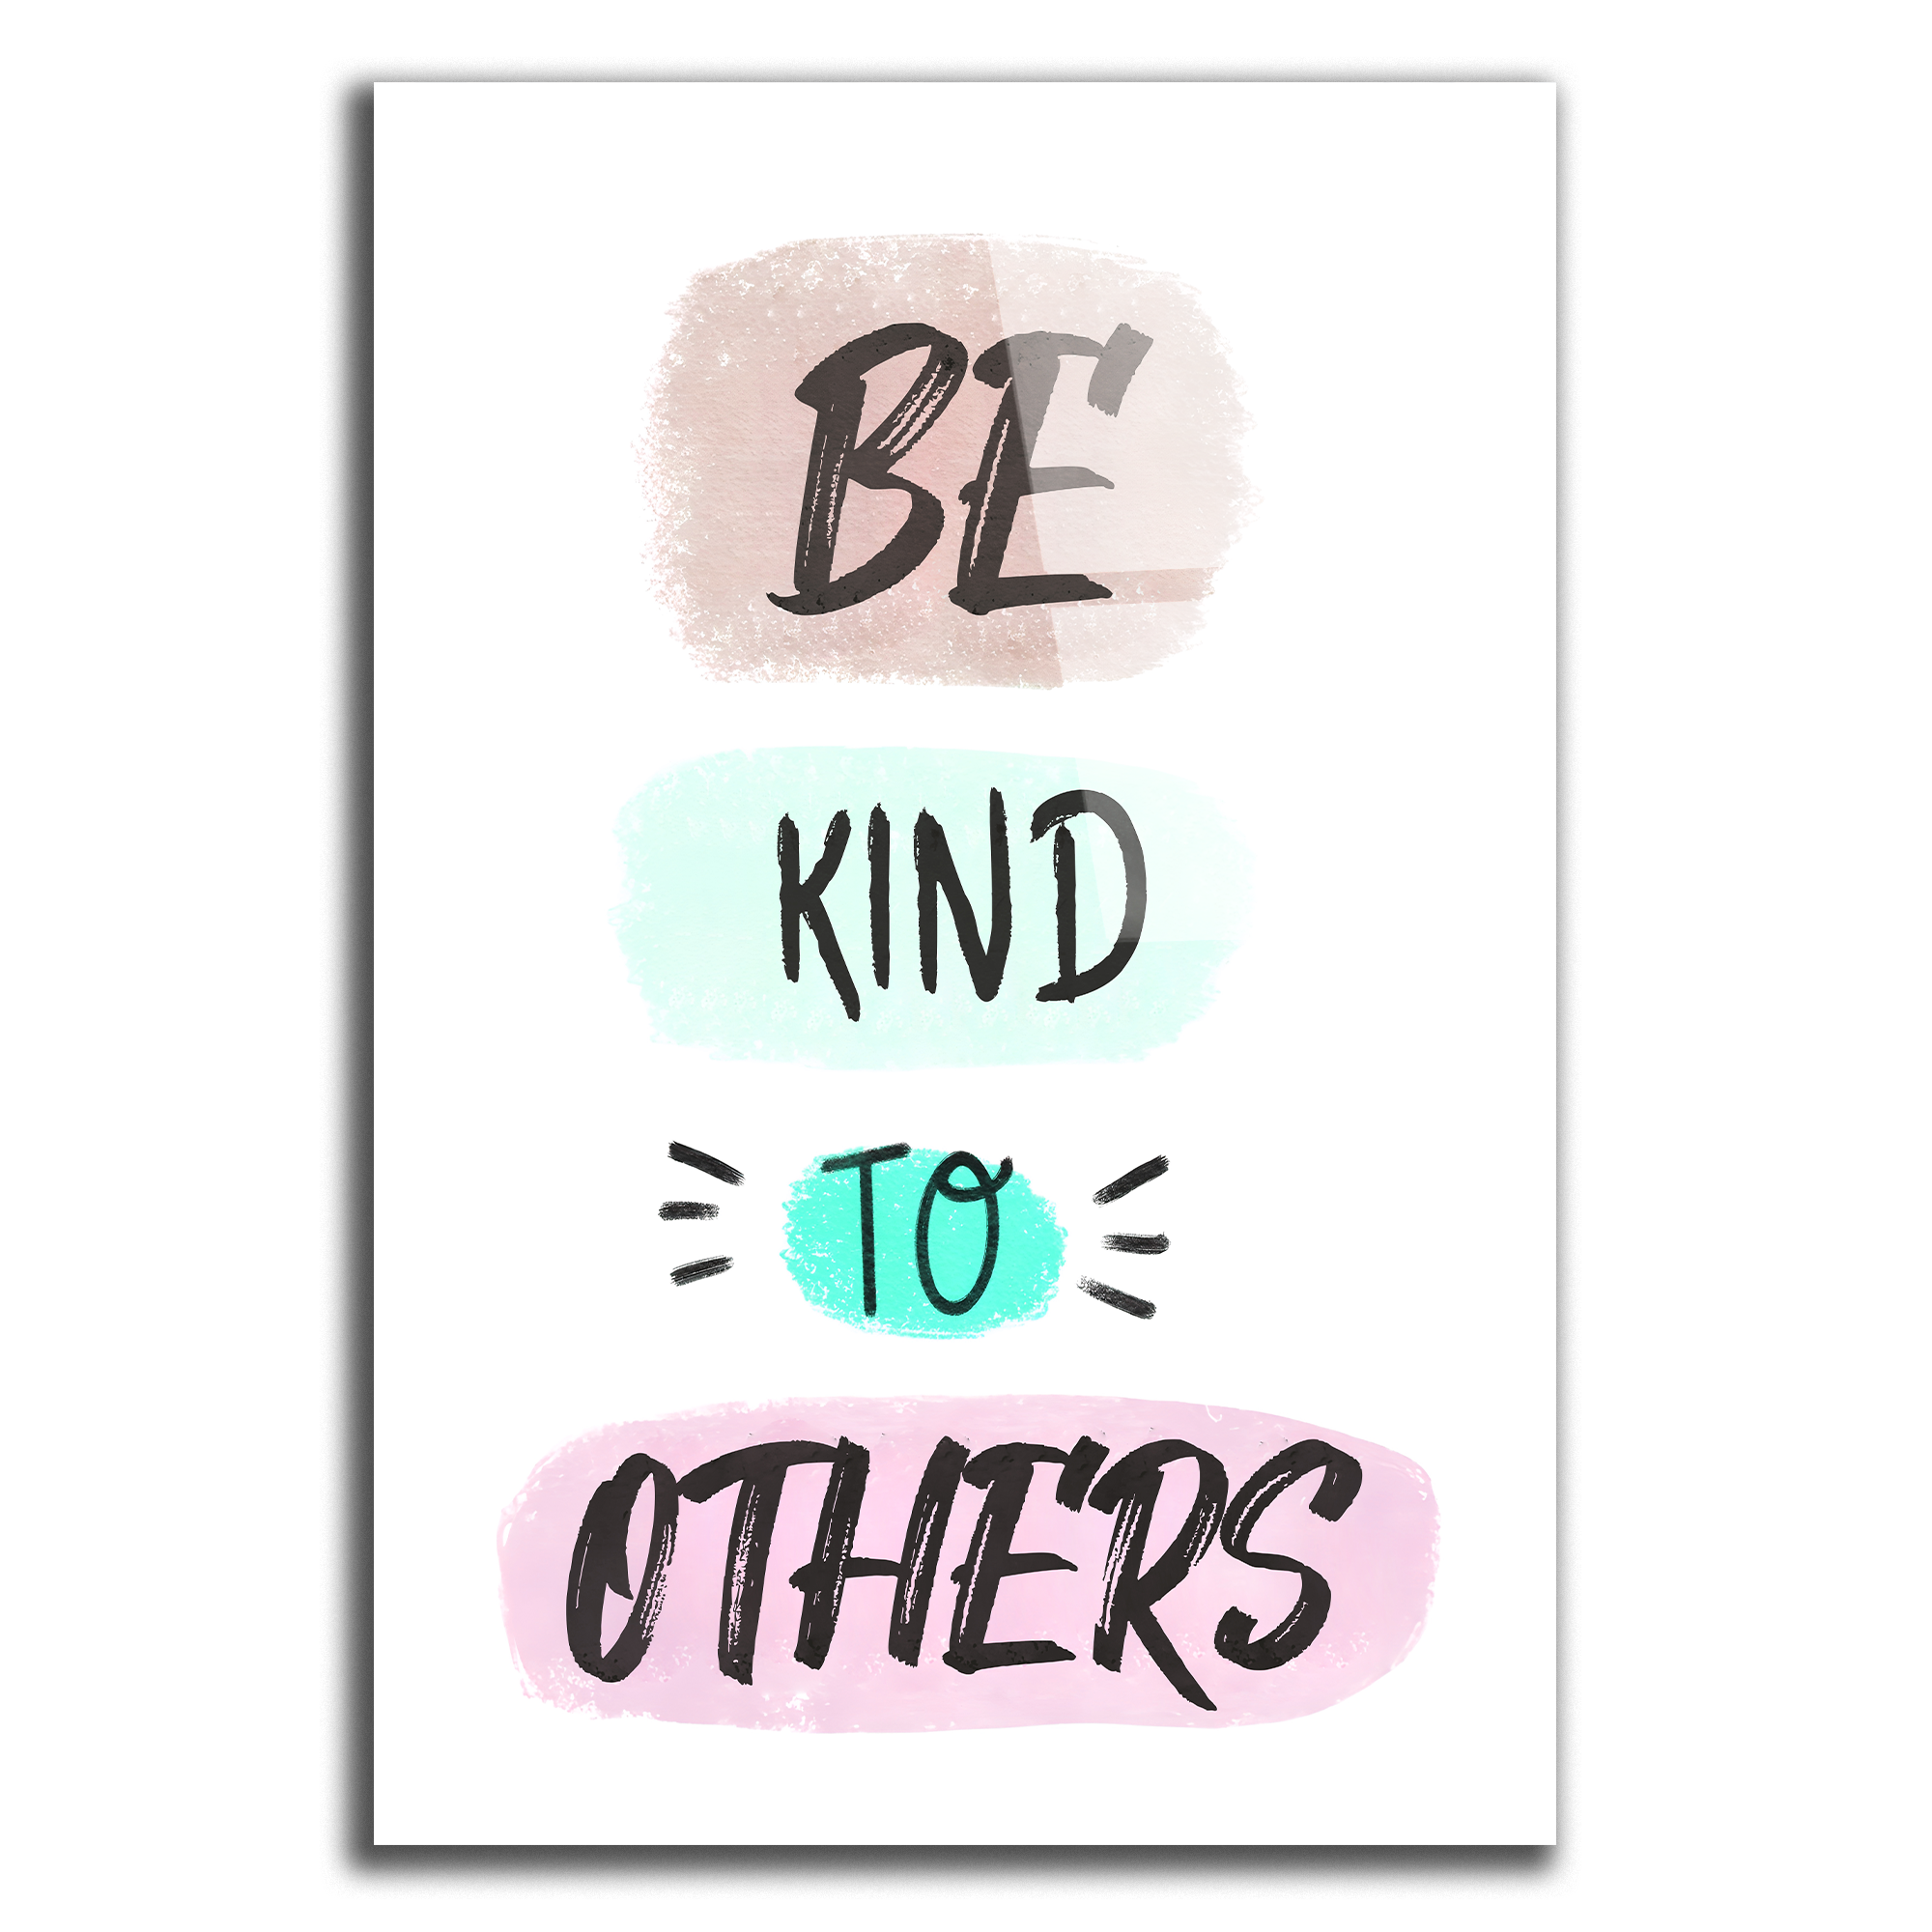 Soyez gentil avec les autres